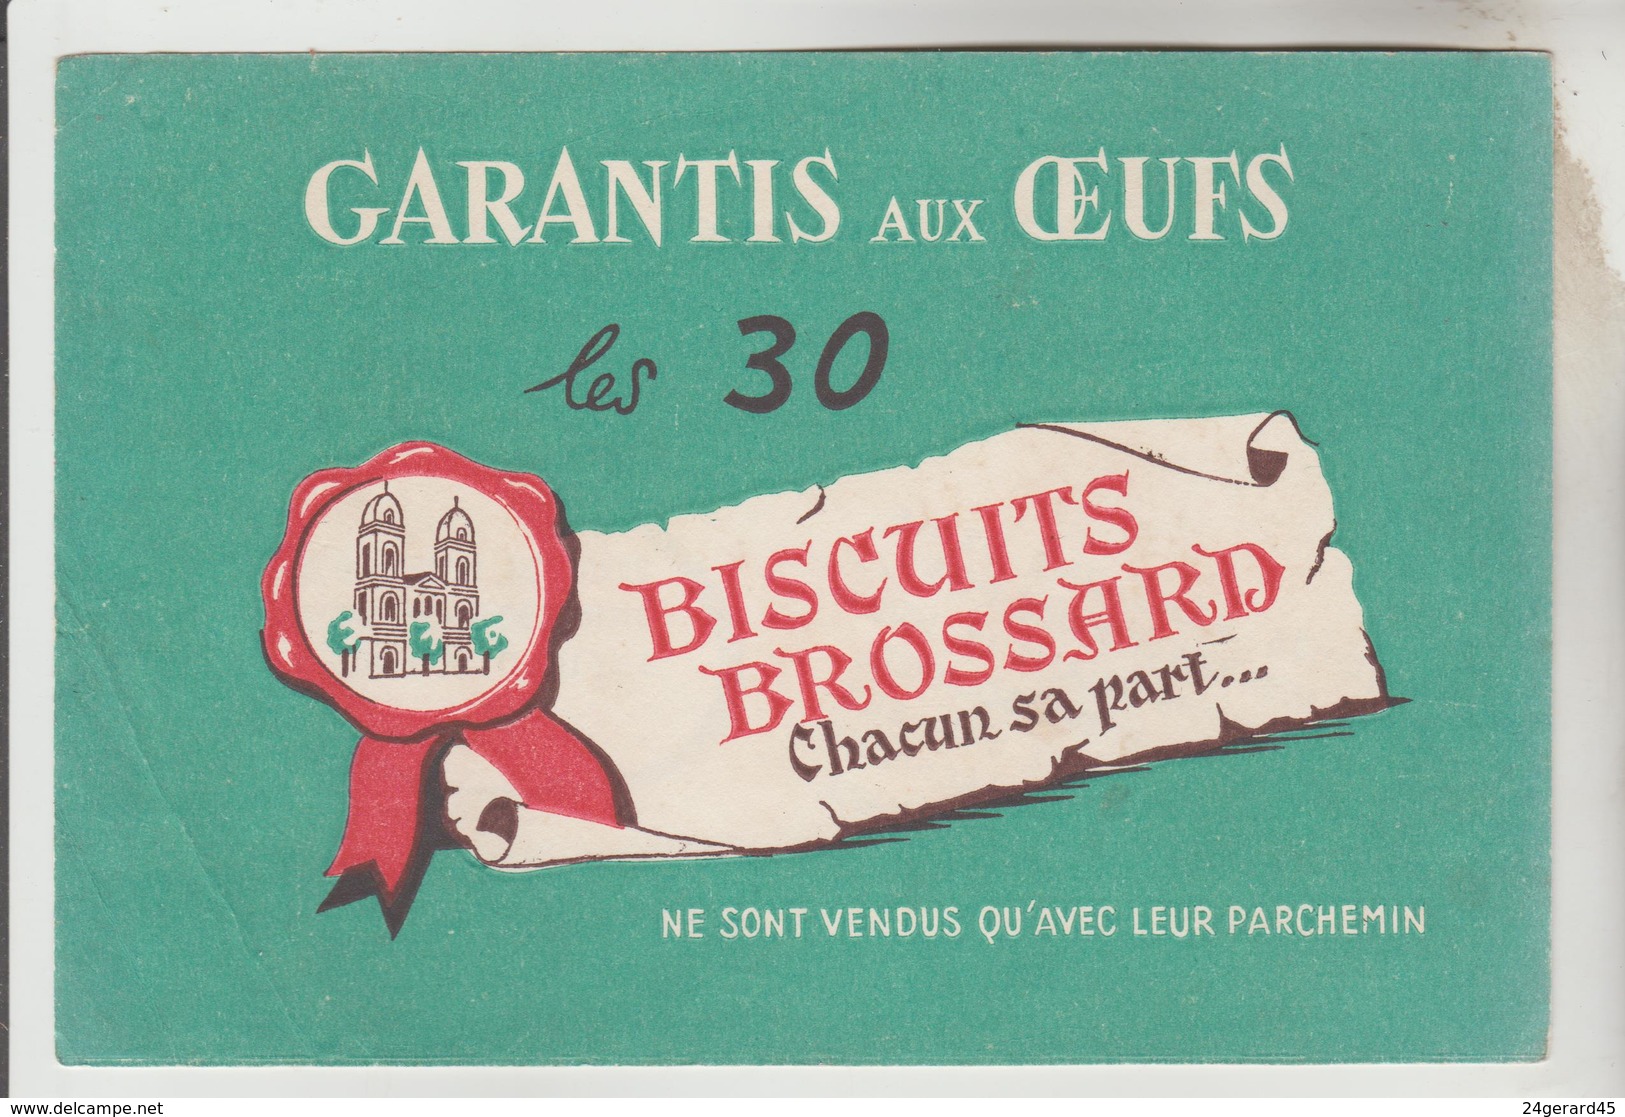 2 BUVARDS GATEAUX PAIN D'EPICES - Pain D'Epices BROCHET Frères, Biscuits BROSSARD St Jean D'Angély Charente Maritime - Senf